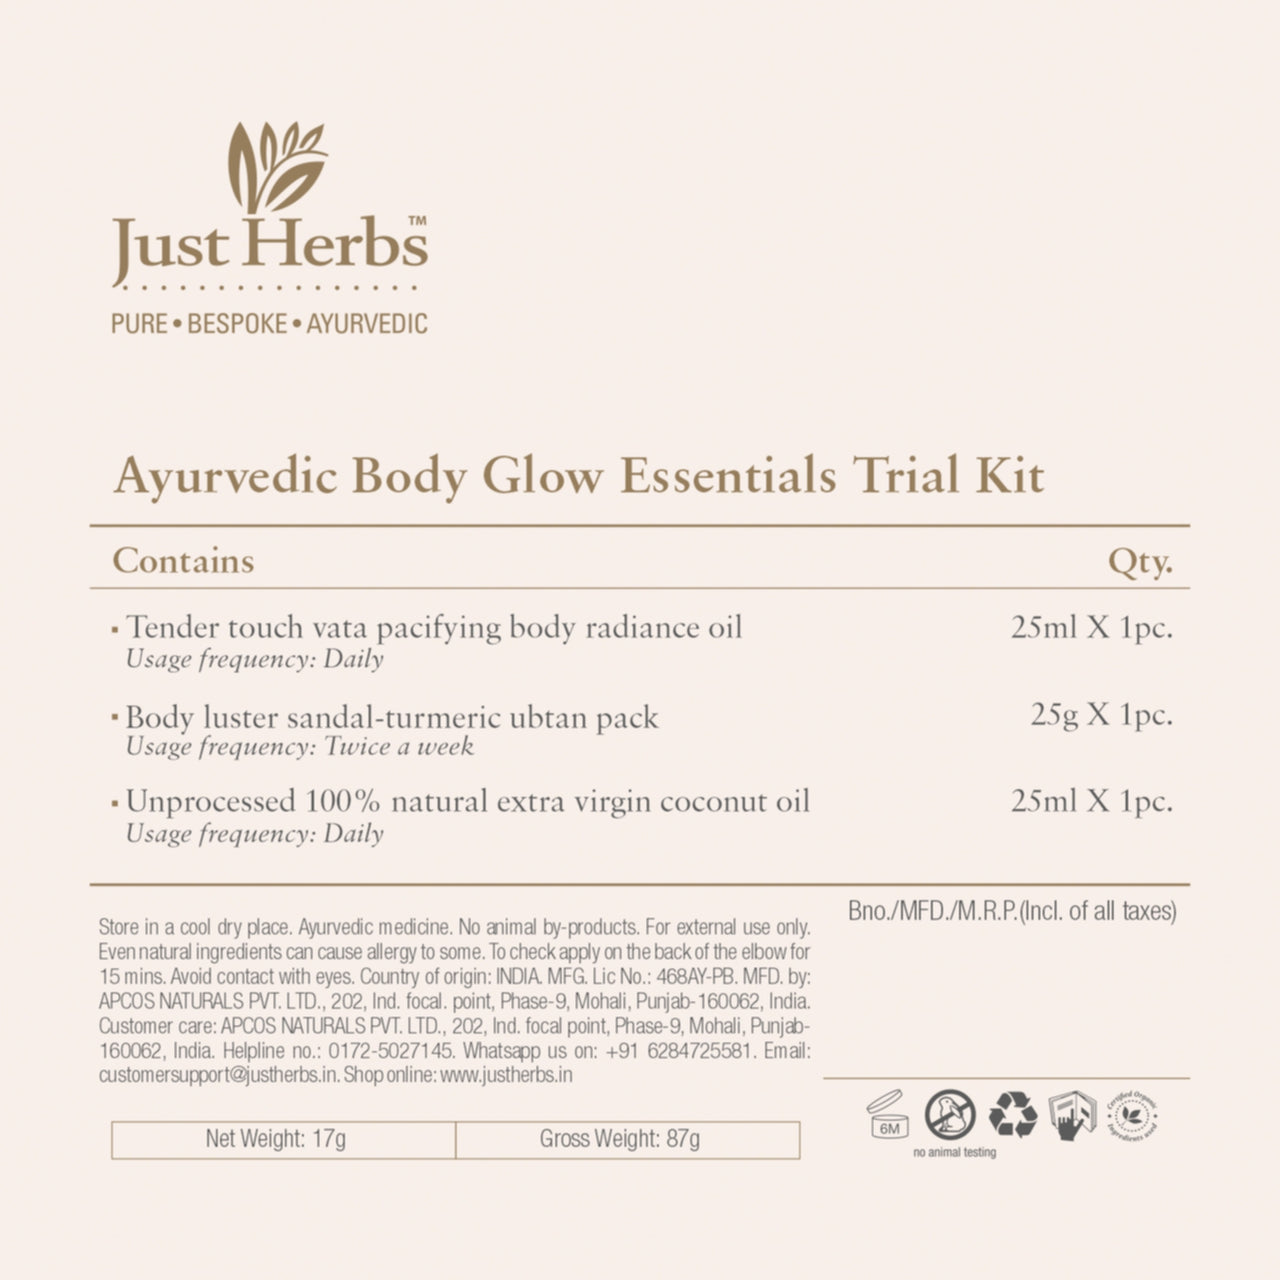 Ayurvedic Body-Glow Essentials Trial Kit